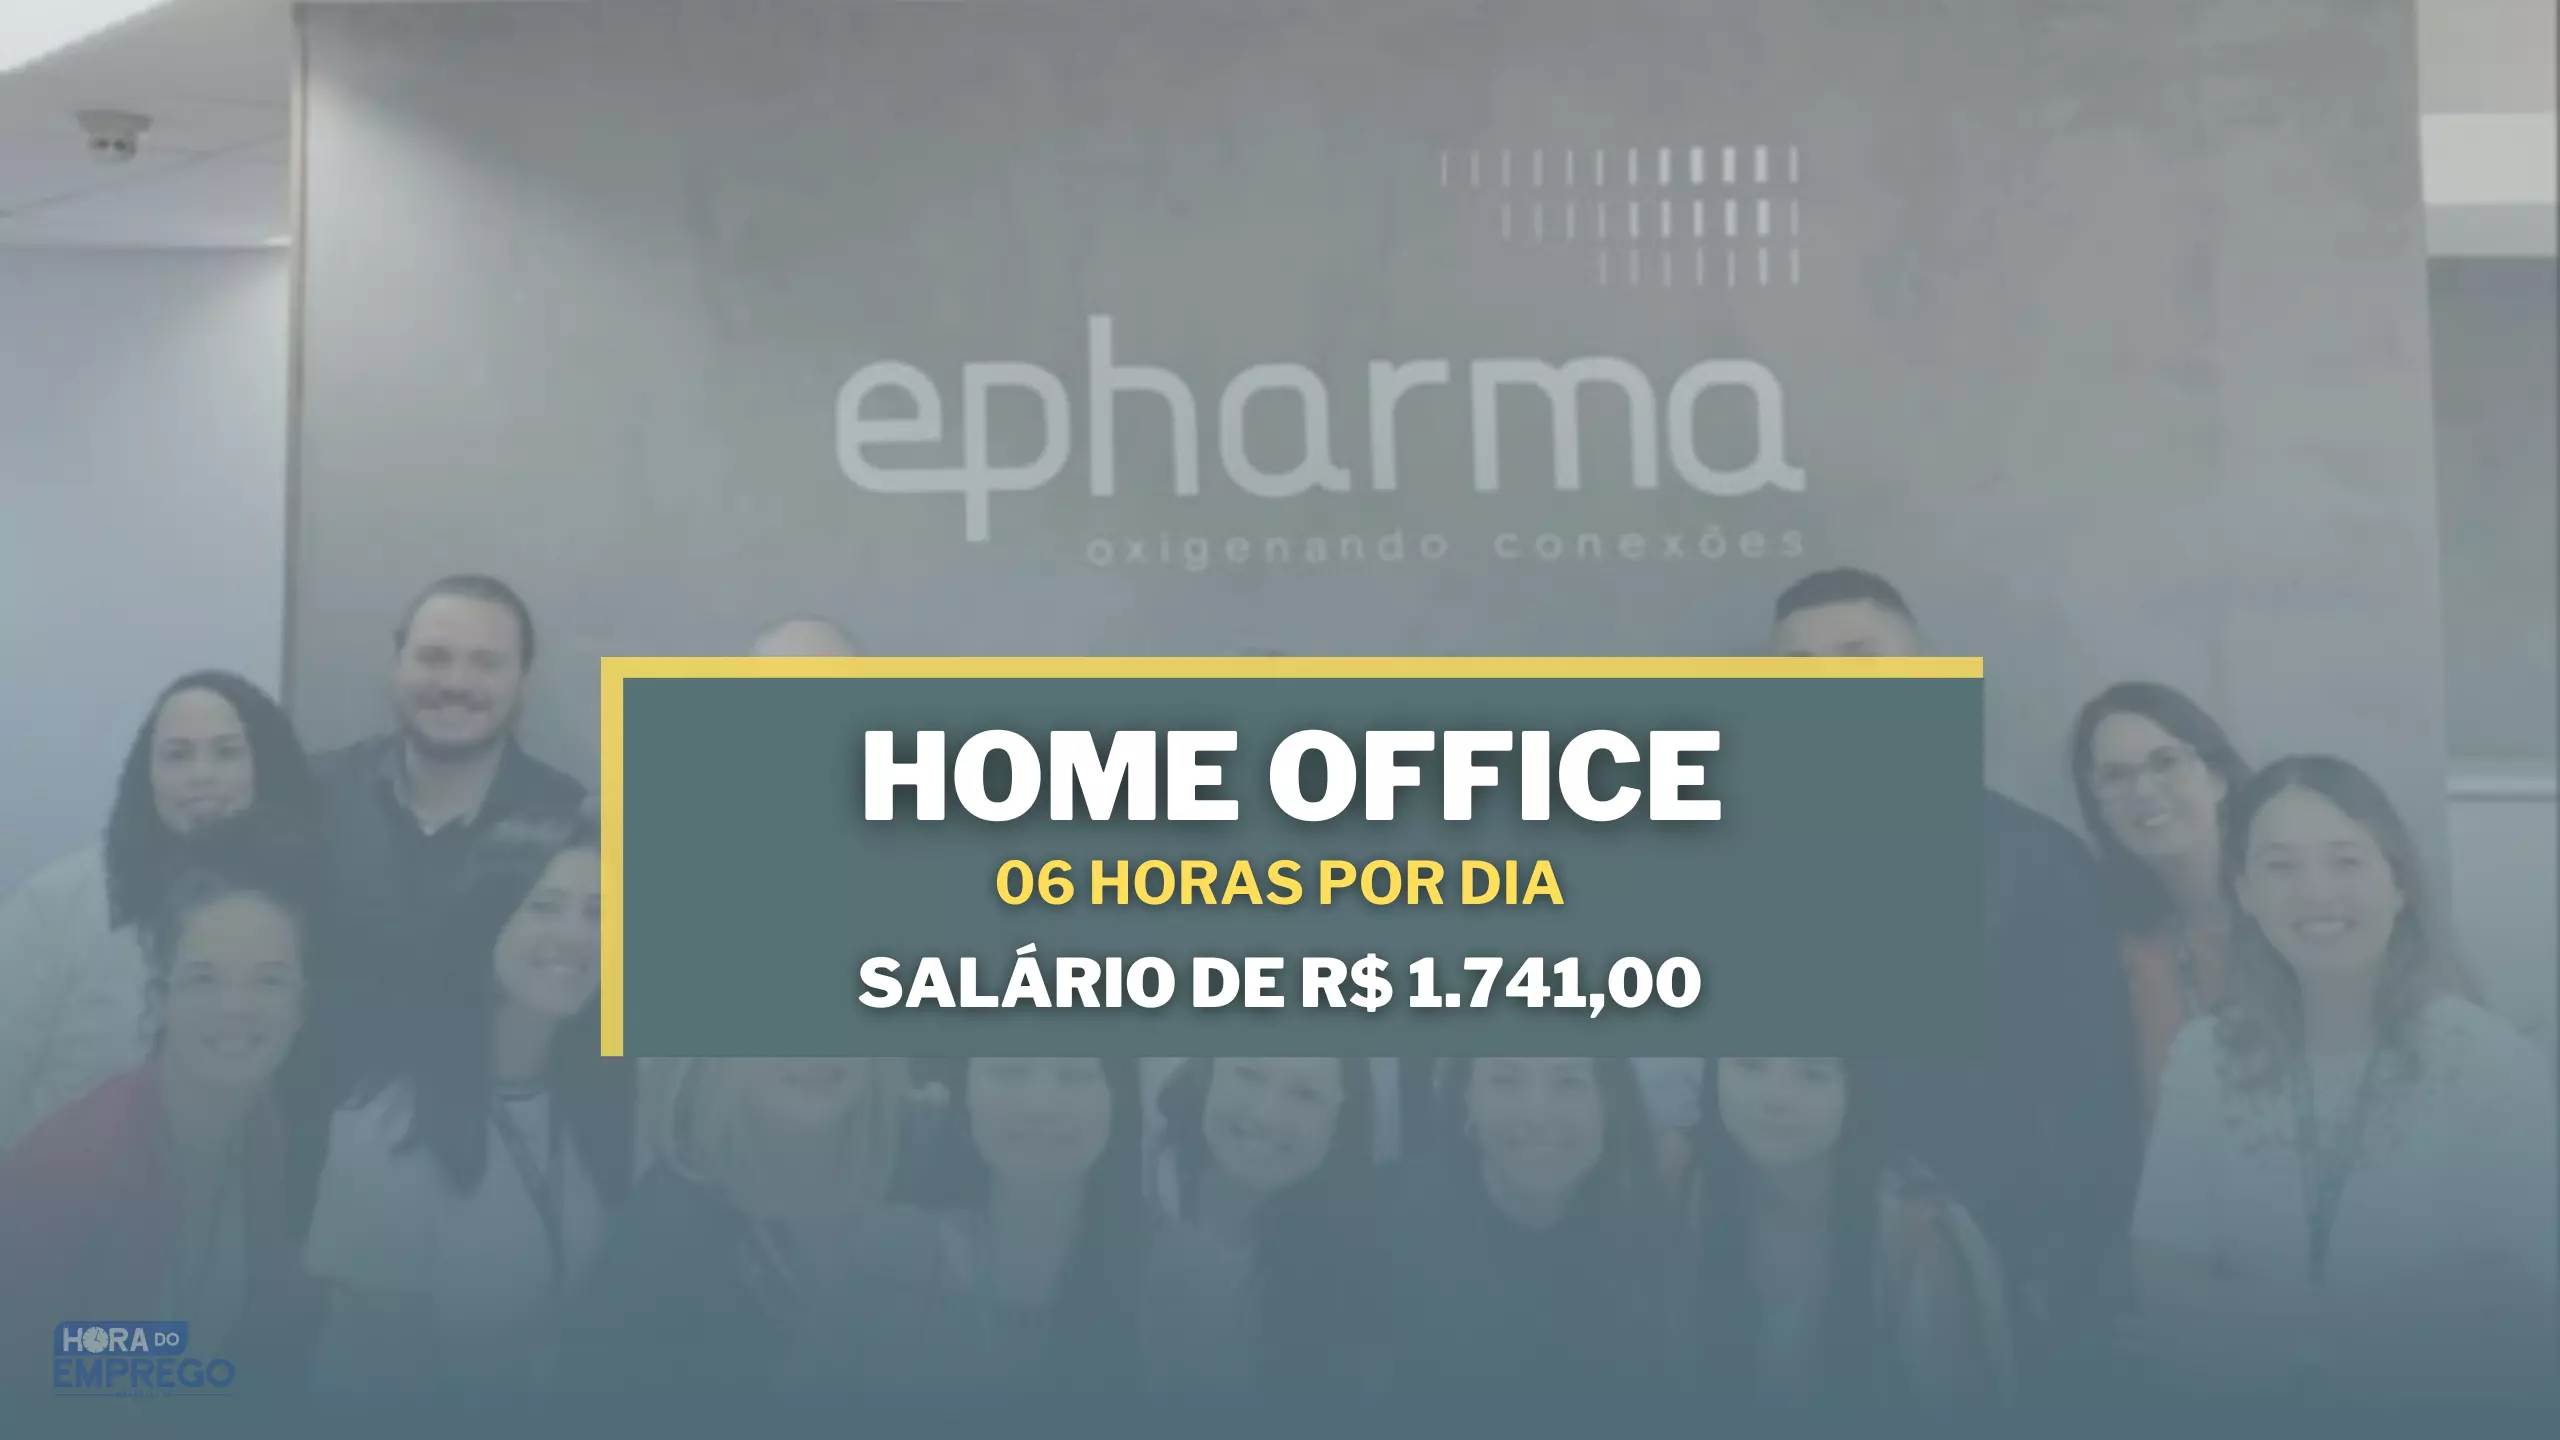 Epharma abre vaga 100% HOME OFFICE para Operadora de Atendimento 06 horas por dia e salário de R$ 1.741,00